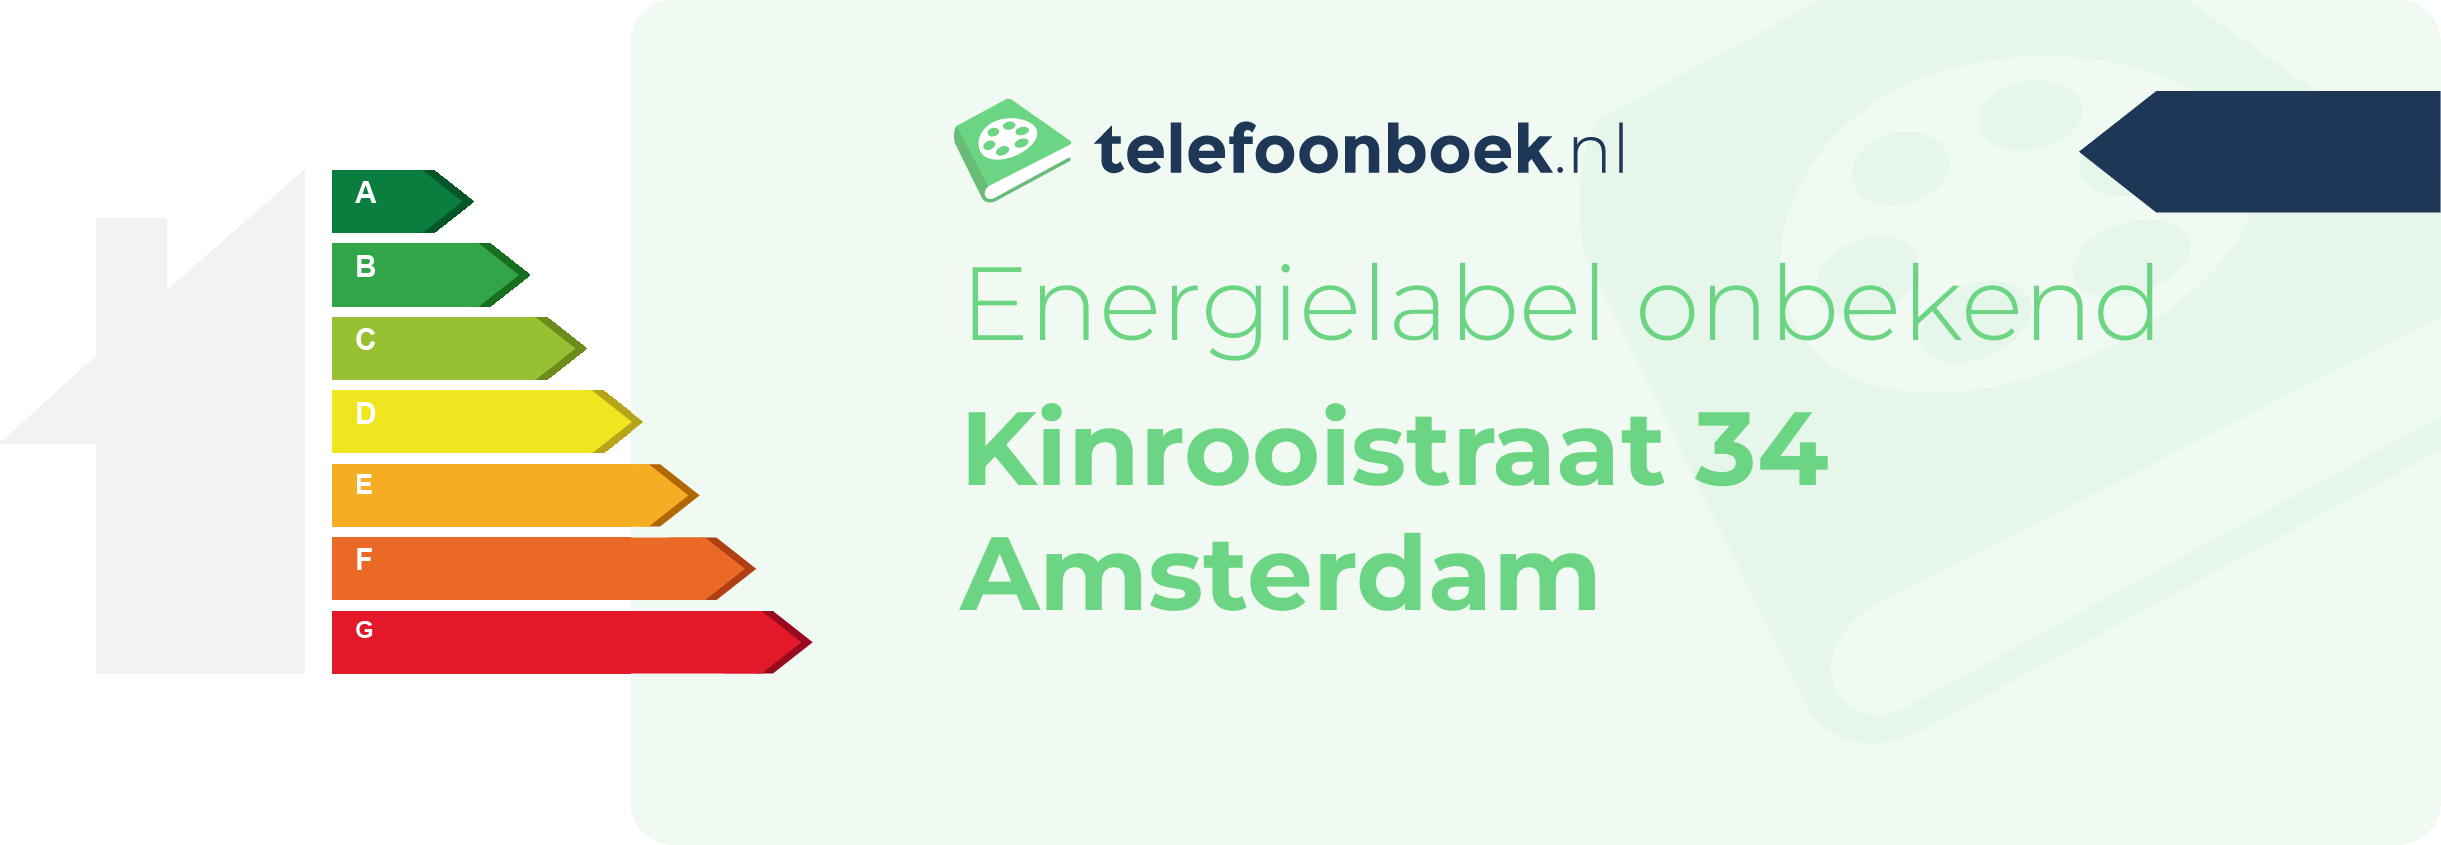 Energielabel Kinrooistraat 34 Amsterdam